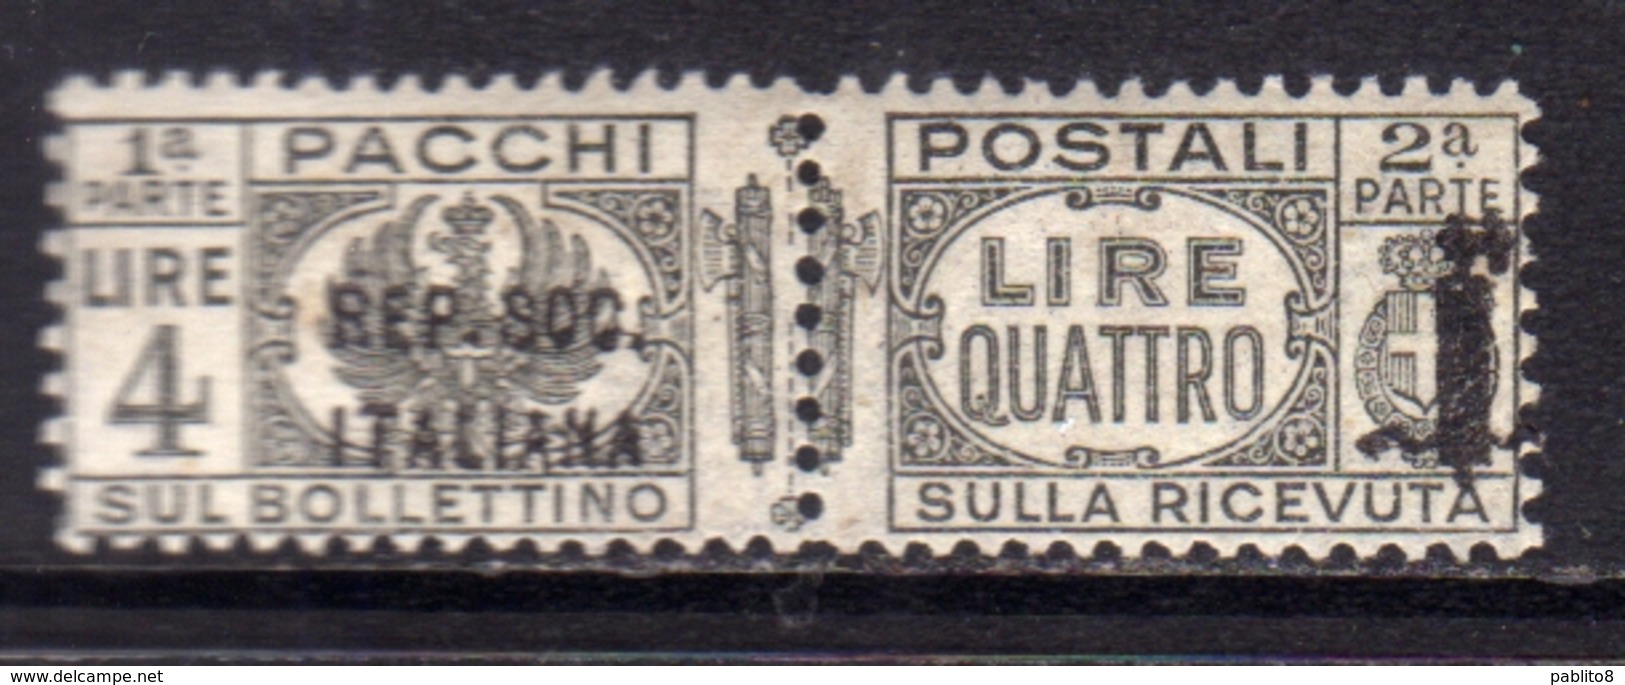 ITALIA REGNO ITALY 1944 VARIETÀ RSI REPUBBLICA SOCIALE ITALIANA PACCHI POSTALI PARCEL POST FASCIO LIRE 4 MNH FIRMATO - Postal Parcels